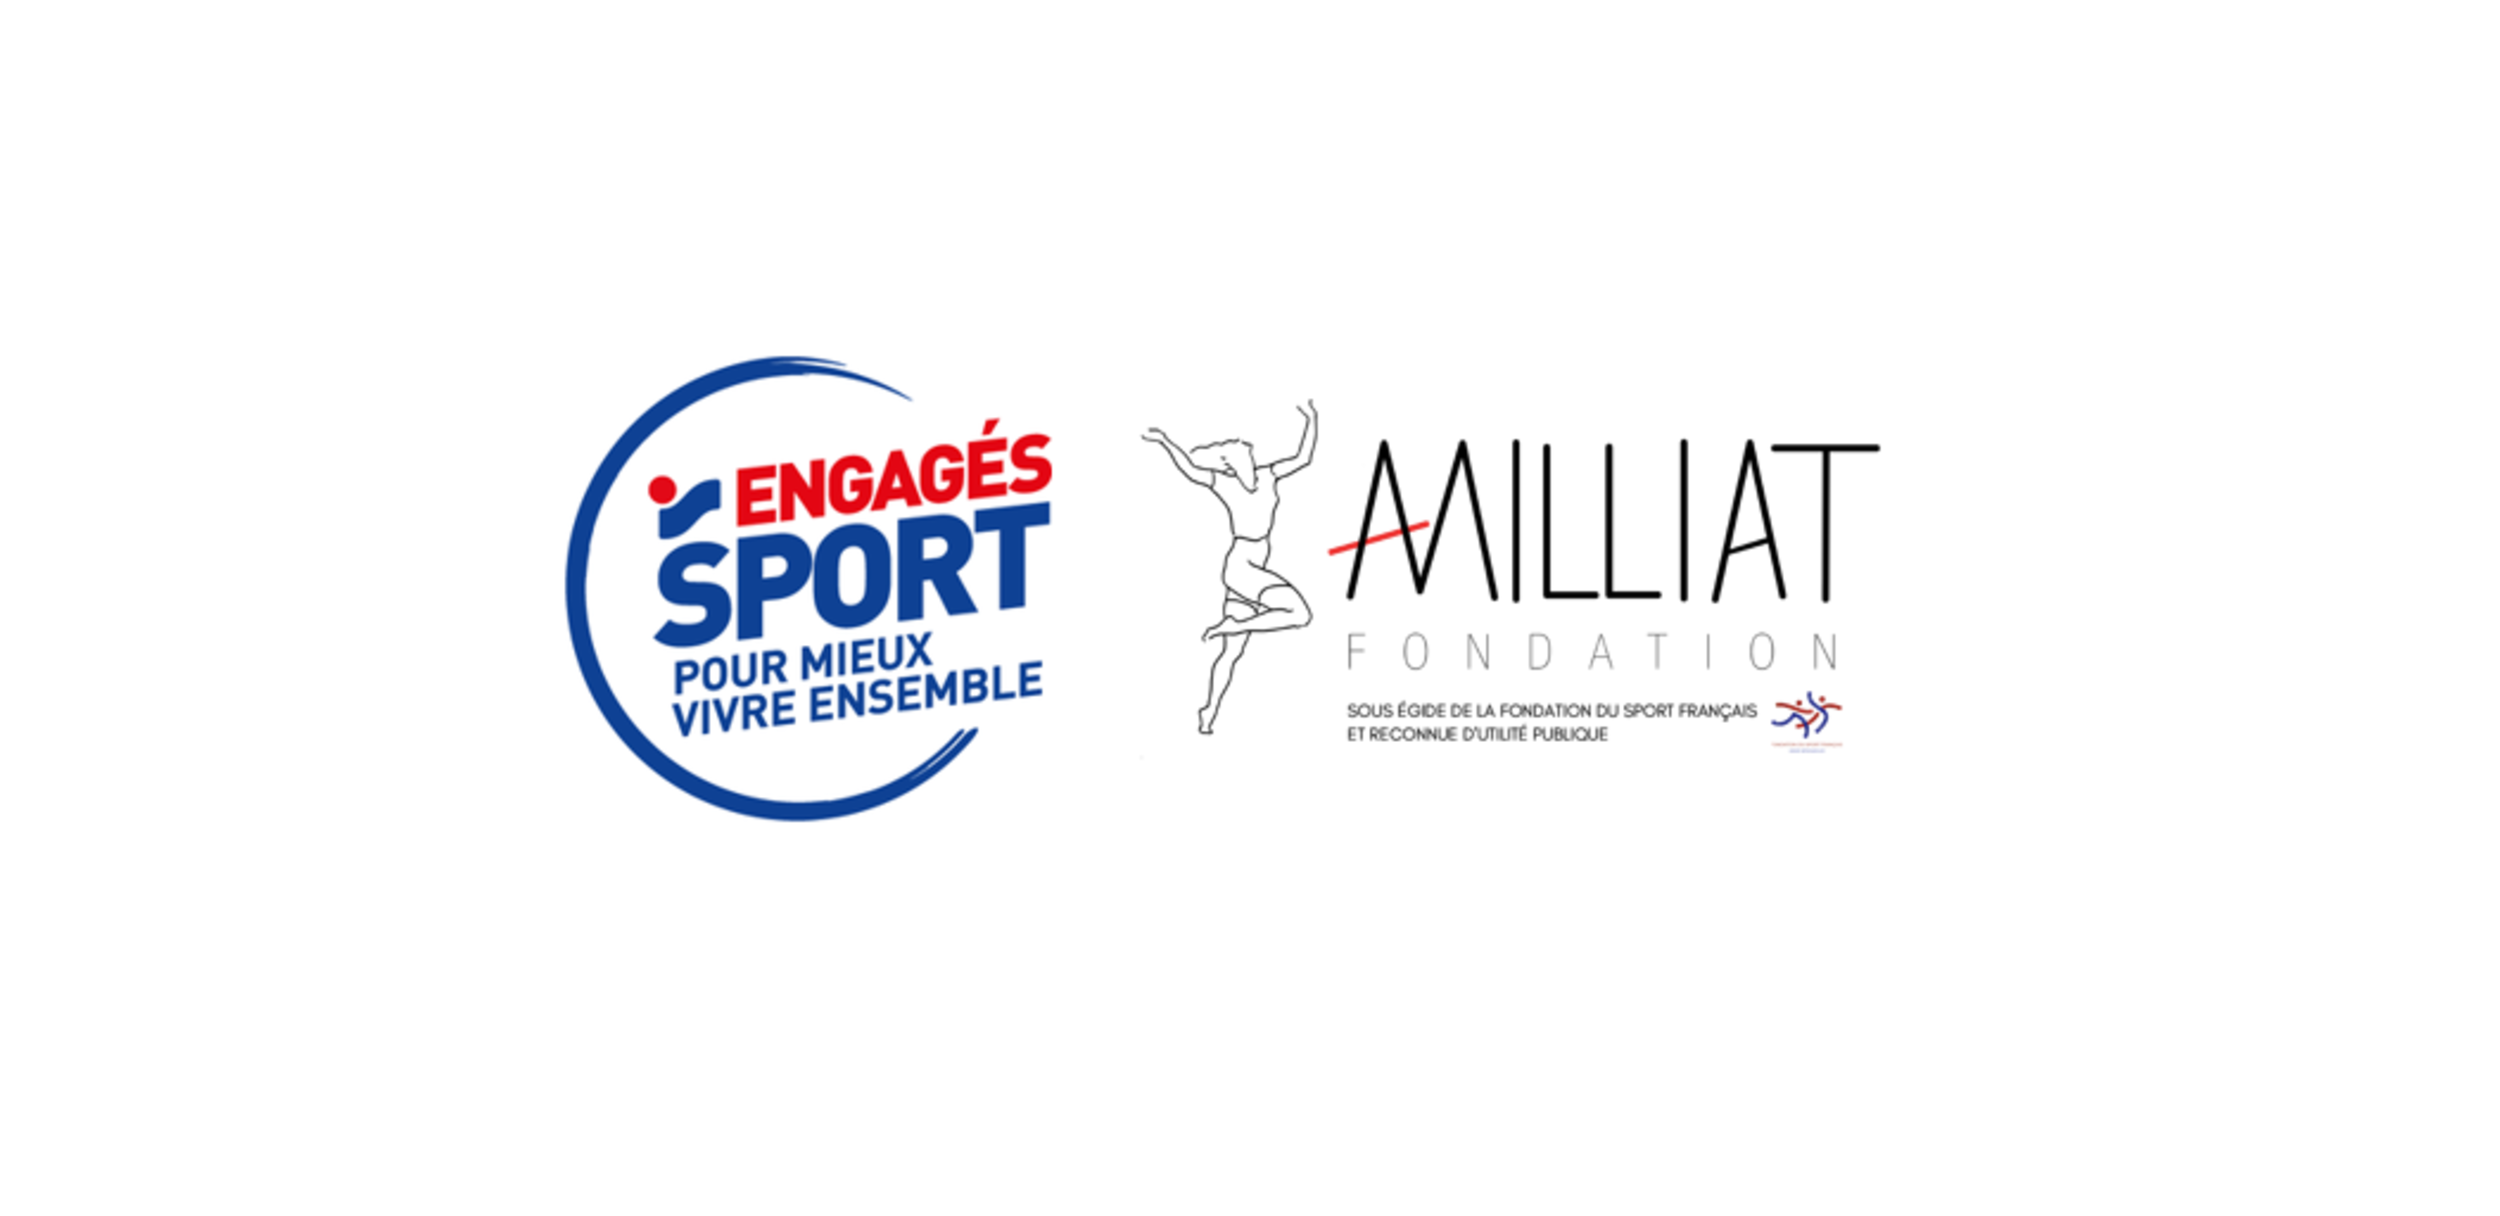 Intersport et a fondation Alice Milliat lancent un appel à projet pour les femmes dans le sport